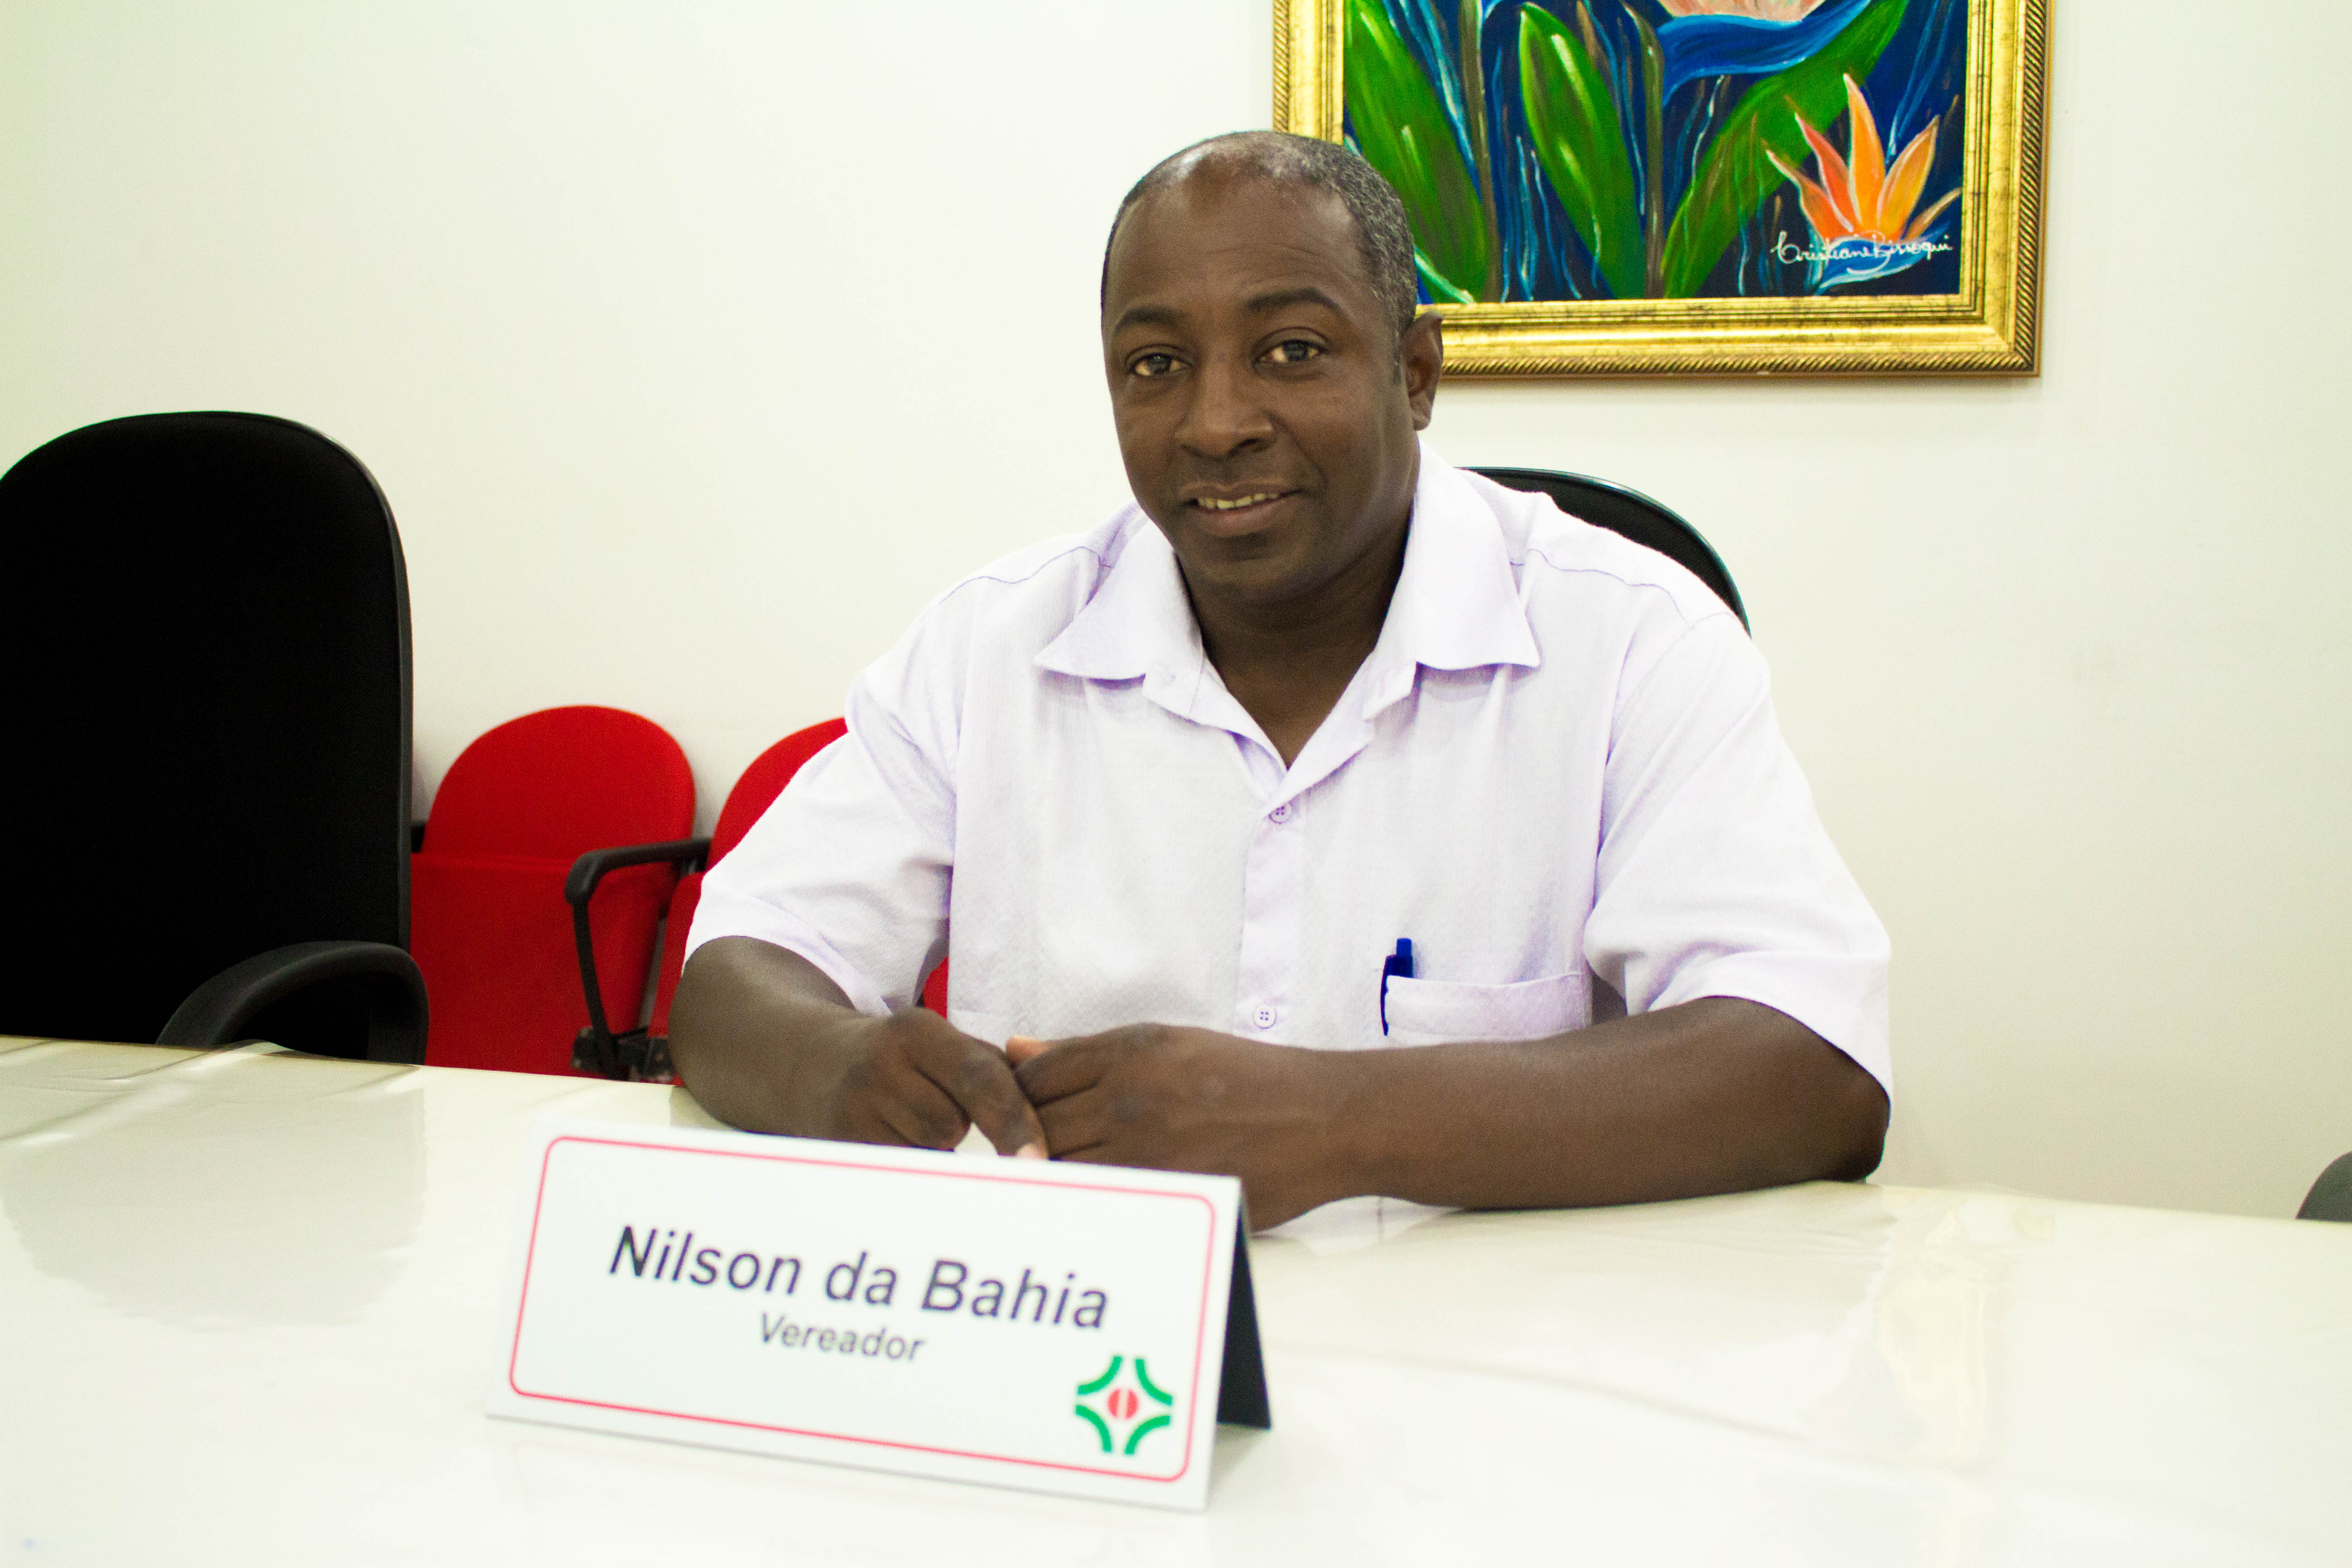 Vereador Nilson da Bahia afirma ter boa expectativa para o mandato